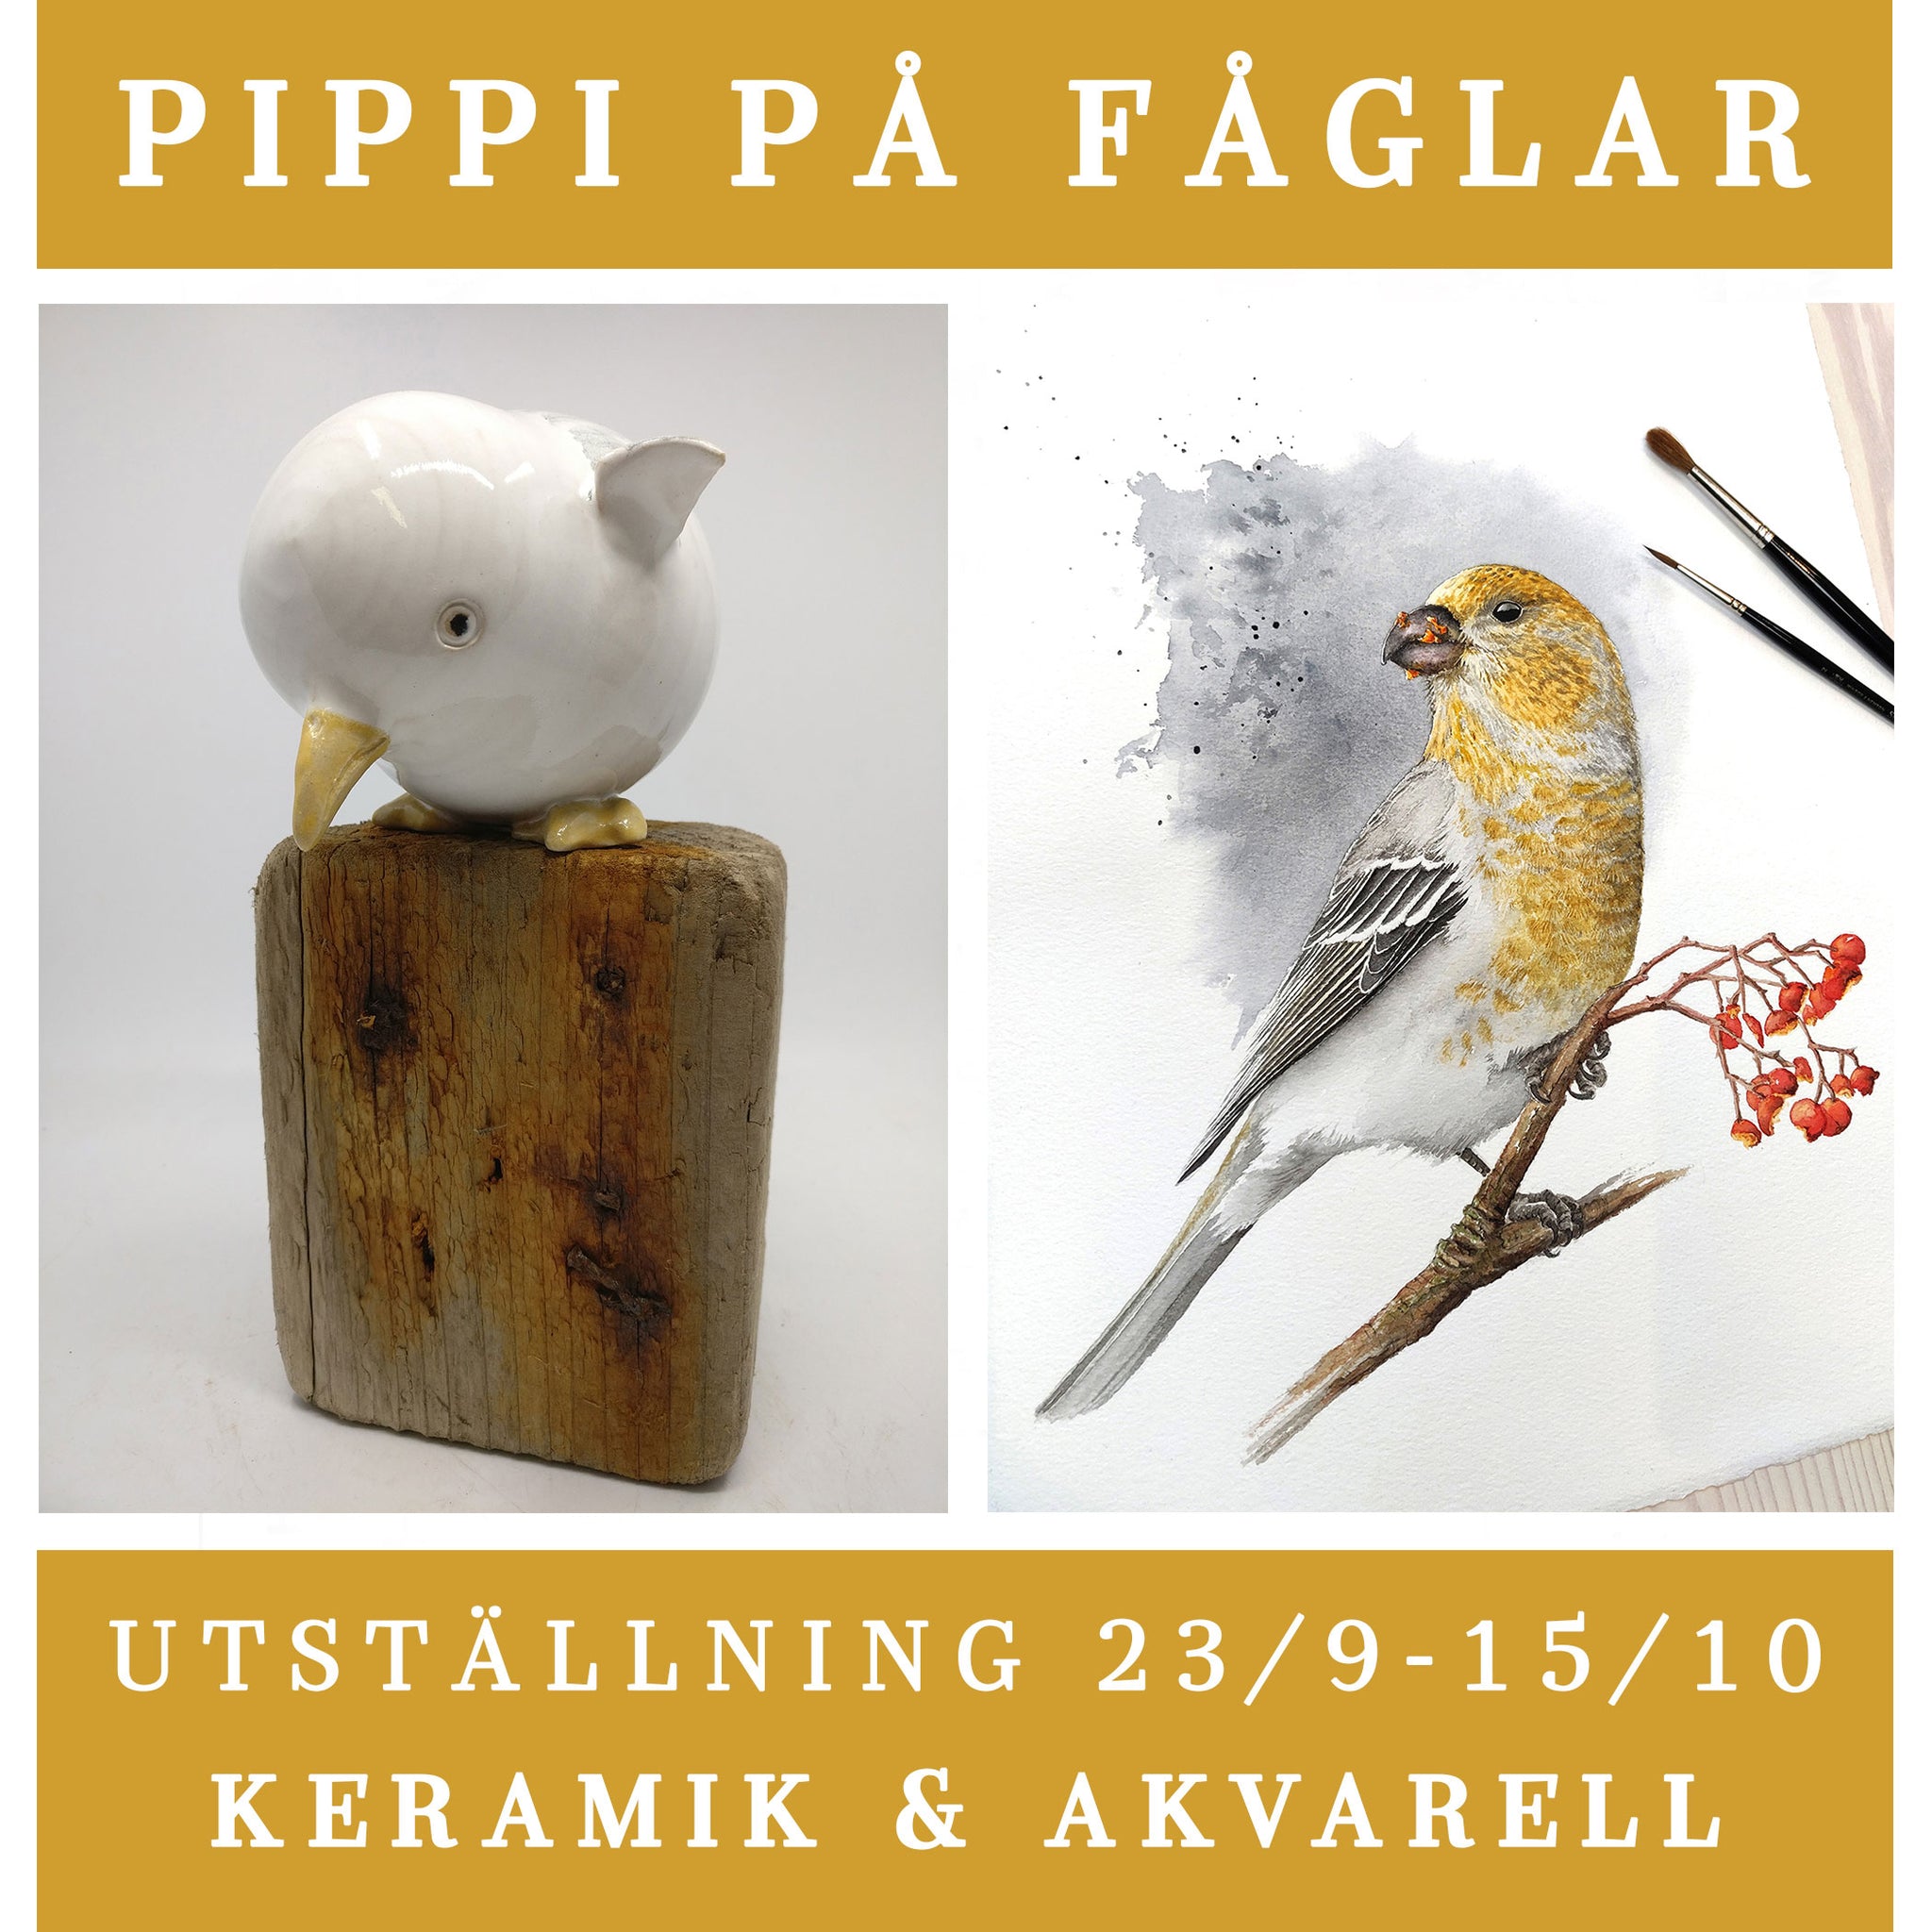 Collective exhibition in Trollhättan